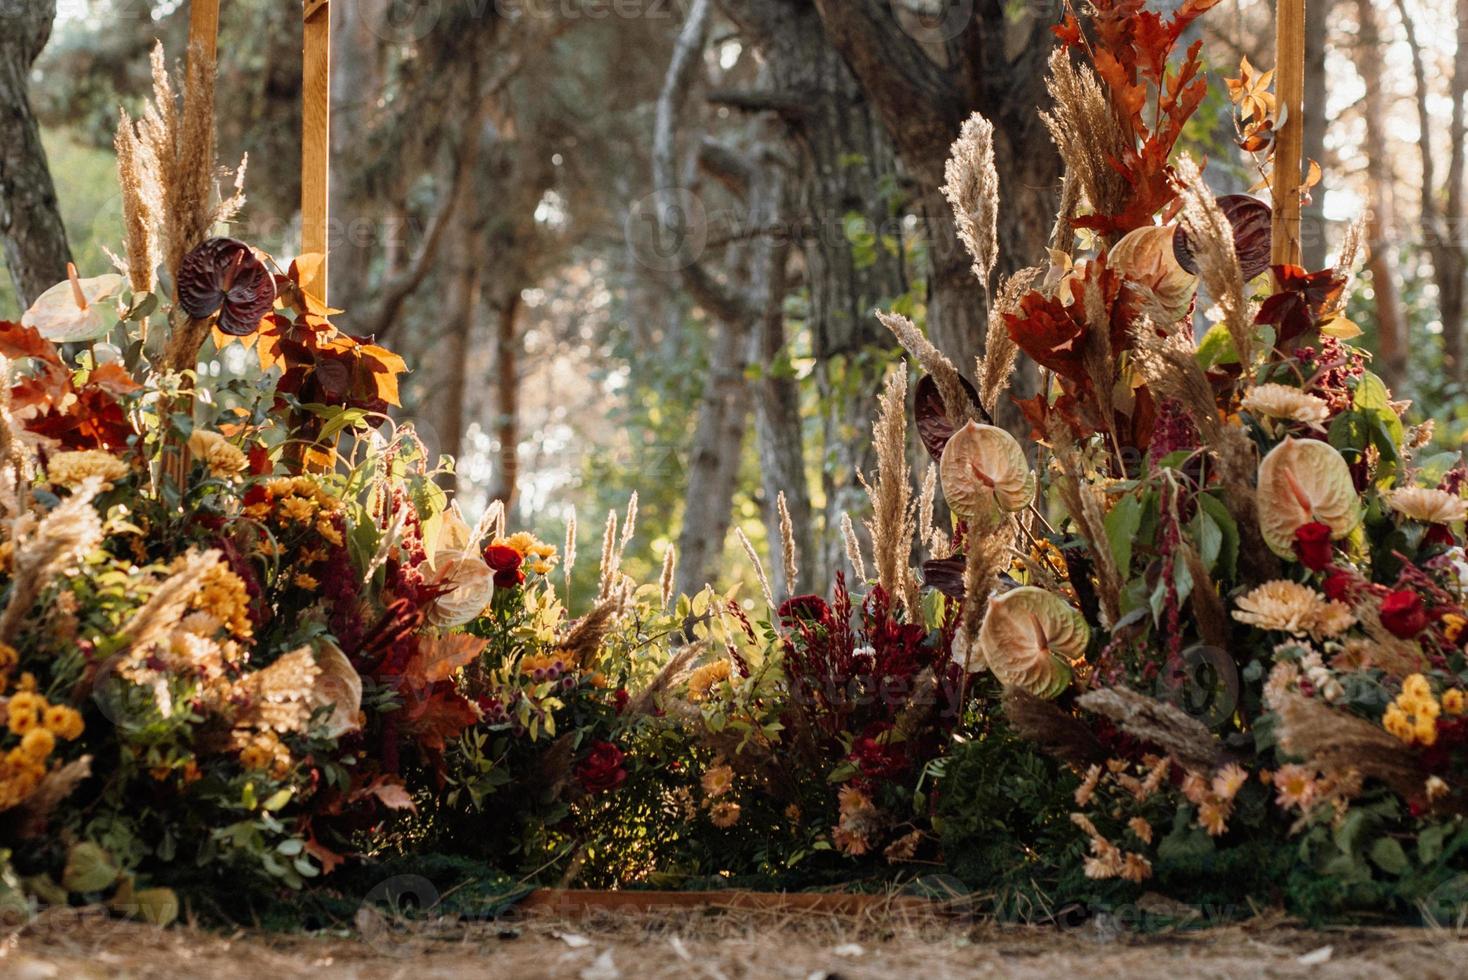 huwelijksceremonie gebied met gedroogde bloemen in een weiland foto